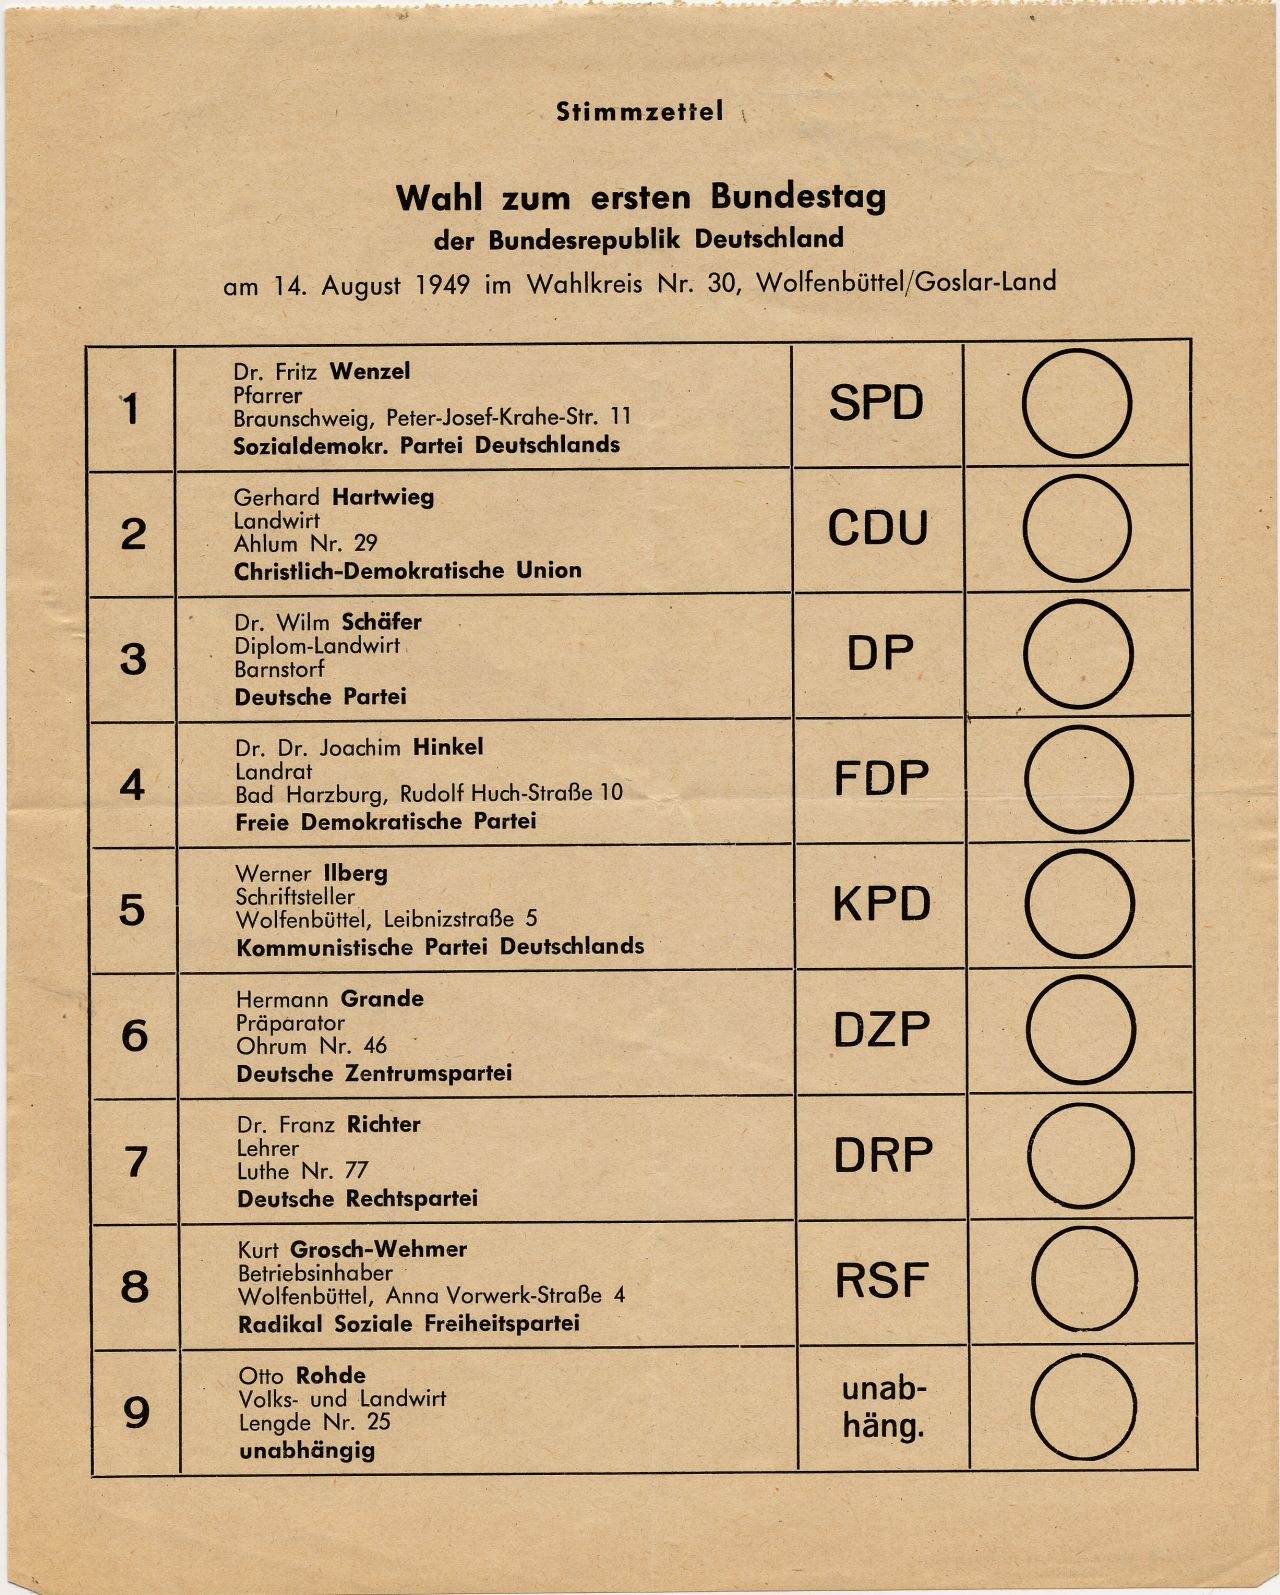 Vergilbtes Blatt; darauf Titelzeilen 'Stimmzettel, Wahl zum ersten Bundestag der Bundesrepublik Deutschland am 14. August 1949 im Wahlkreis Nr. 30, Wolfenbüttel/Goslar-Land'; Liste mit 9 Kandidaten unter Angabe ihrer Partei; jeweils dahinter runder Kreis.